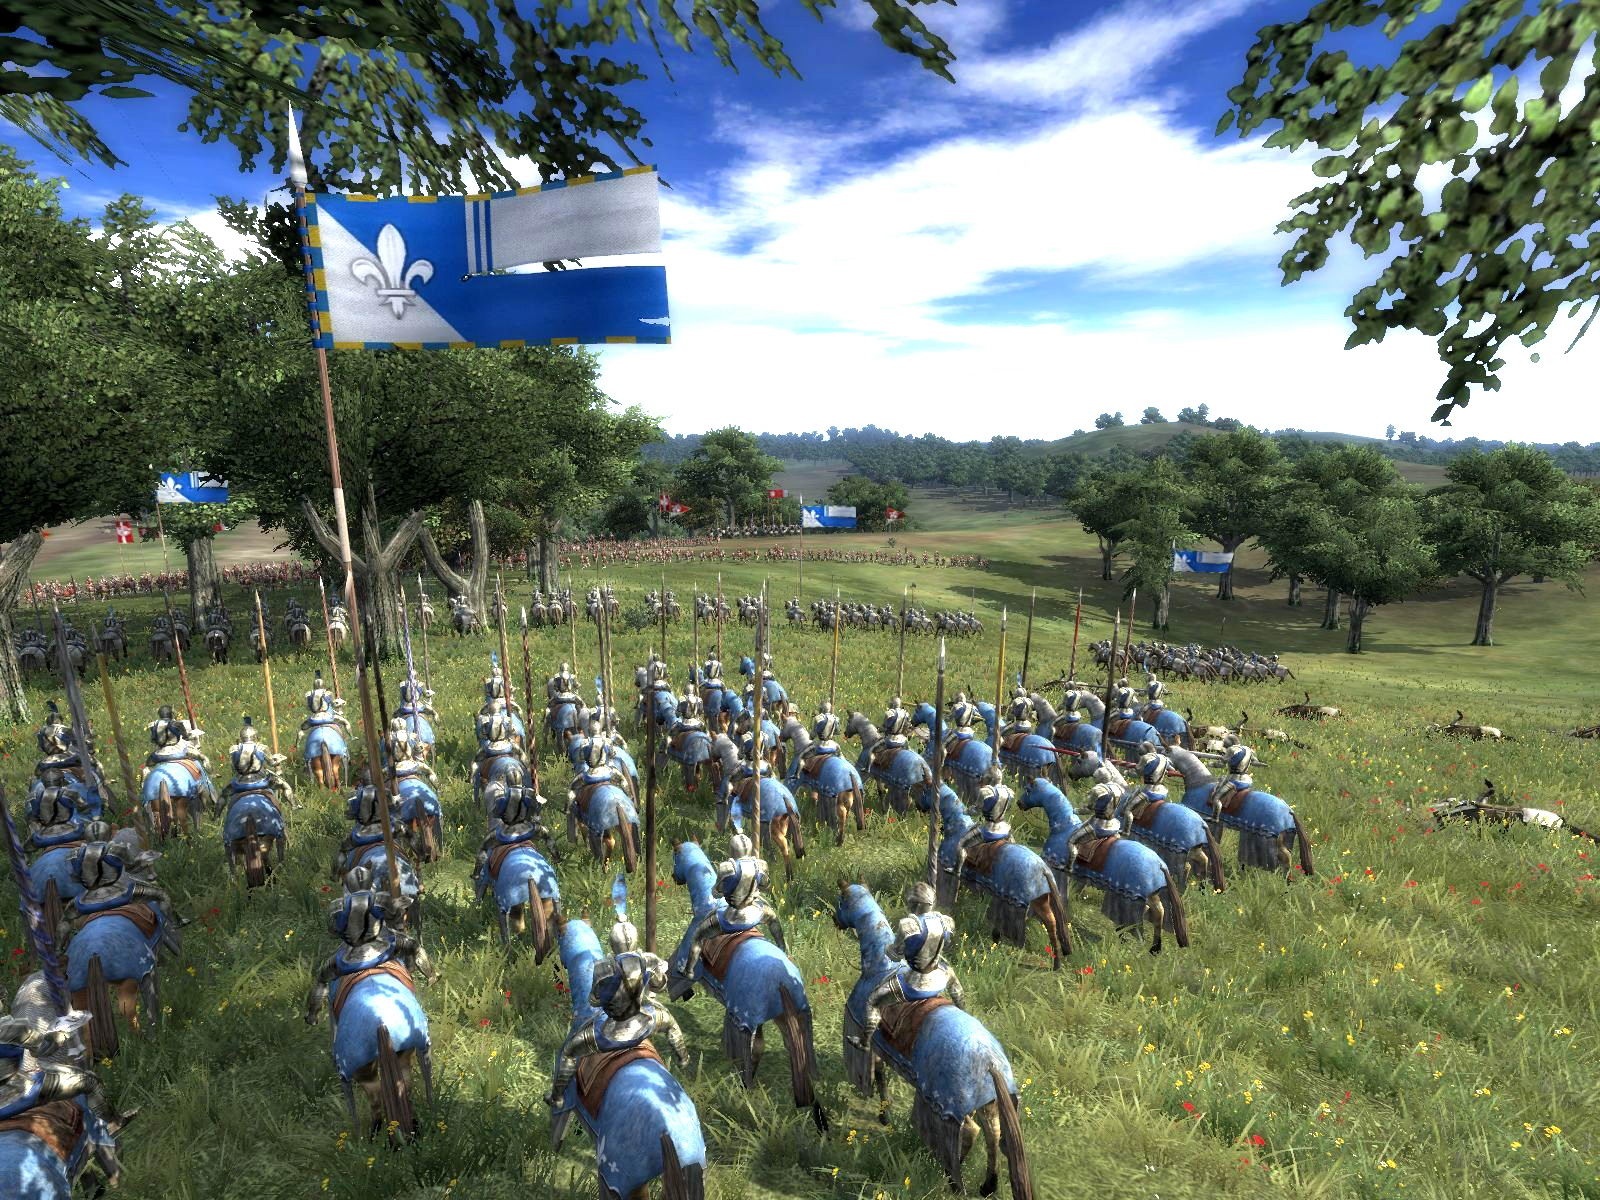 medieval 2 total war historical battles